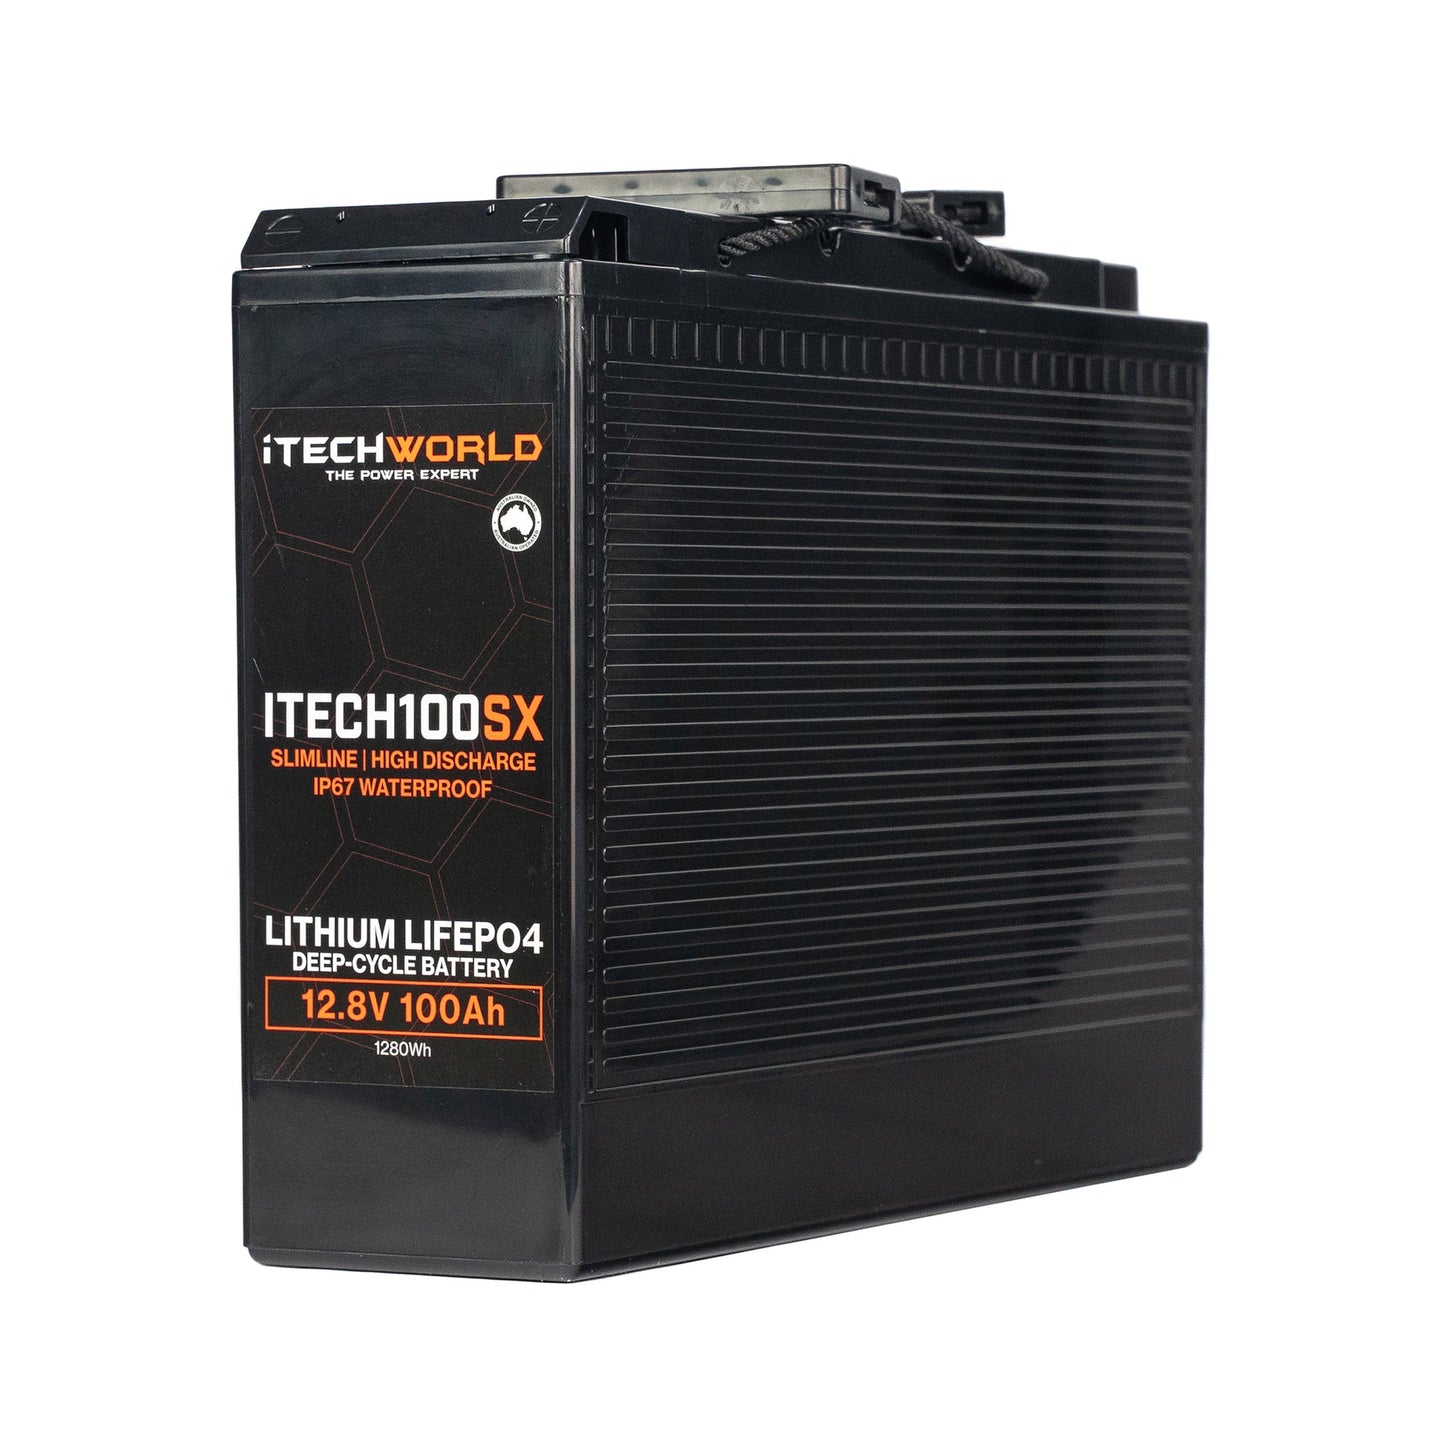 Itech100sx Slim 12V 100ah Lithium Lifepo4 Deep Cycle Battery